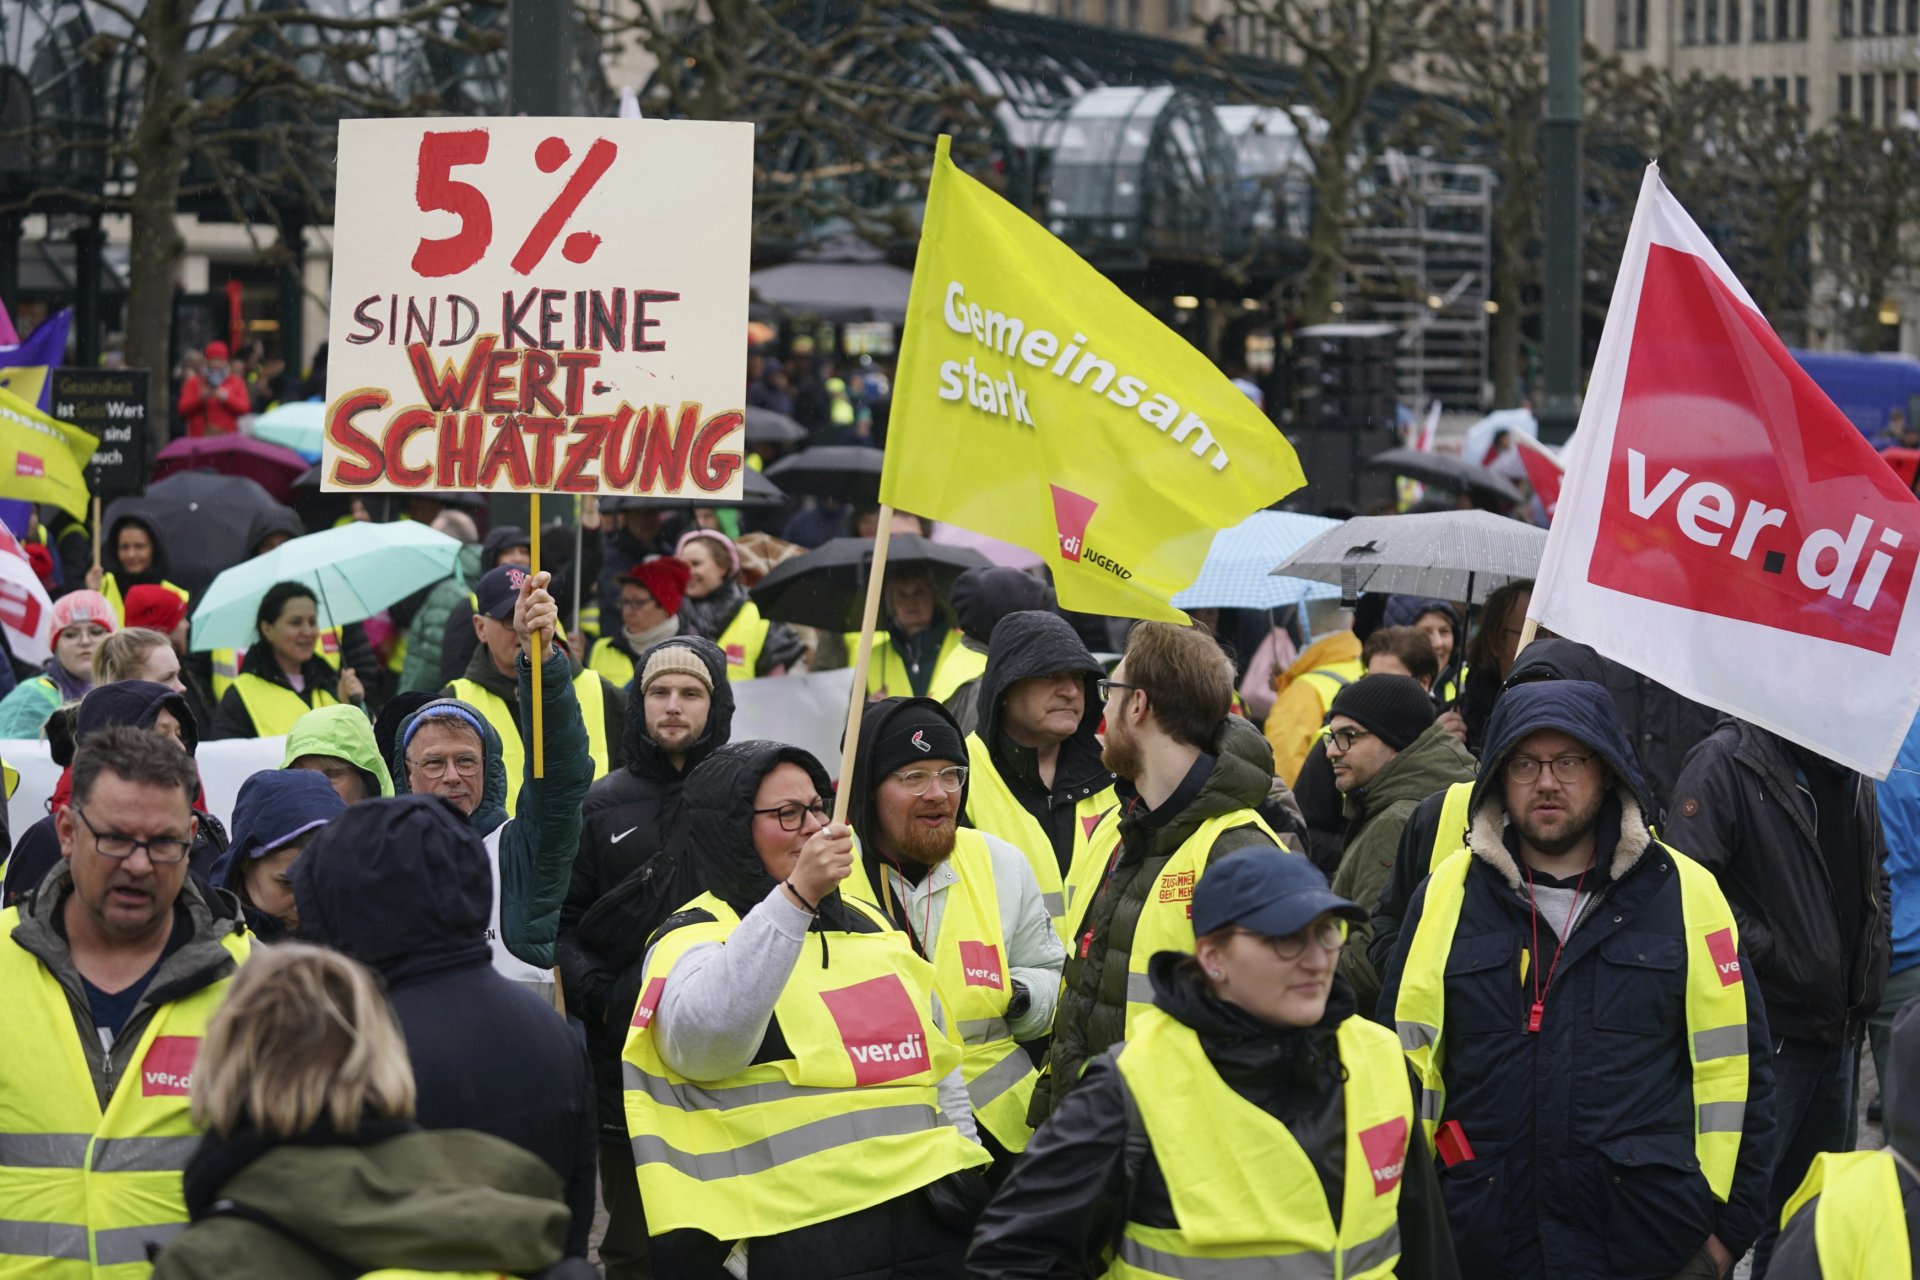 Демонстранти са се събрали на митинг на профсъюза Ver.di в Хамбург в четвъртък, 23 март 2023 г. На плаката пише: „5% не е увеличение (на заплатите)“